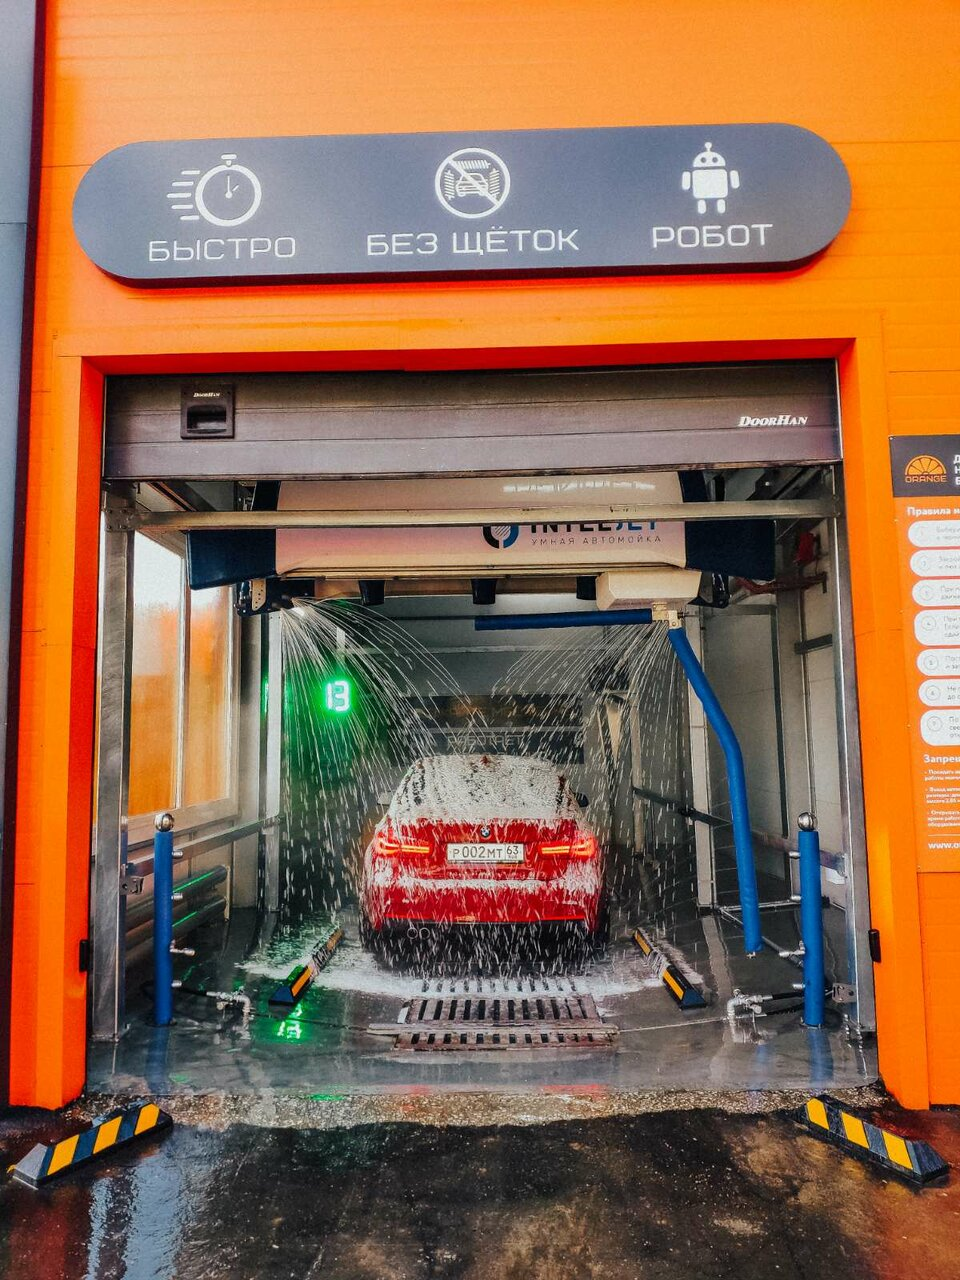 Автоматическая мойка роботизированная. Автомойка Orange Самара. Orange car Wash Самара. Мойка оранж Самара. Робот-мойка Orange, Самара.